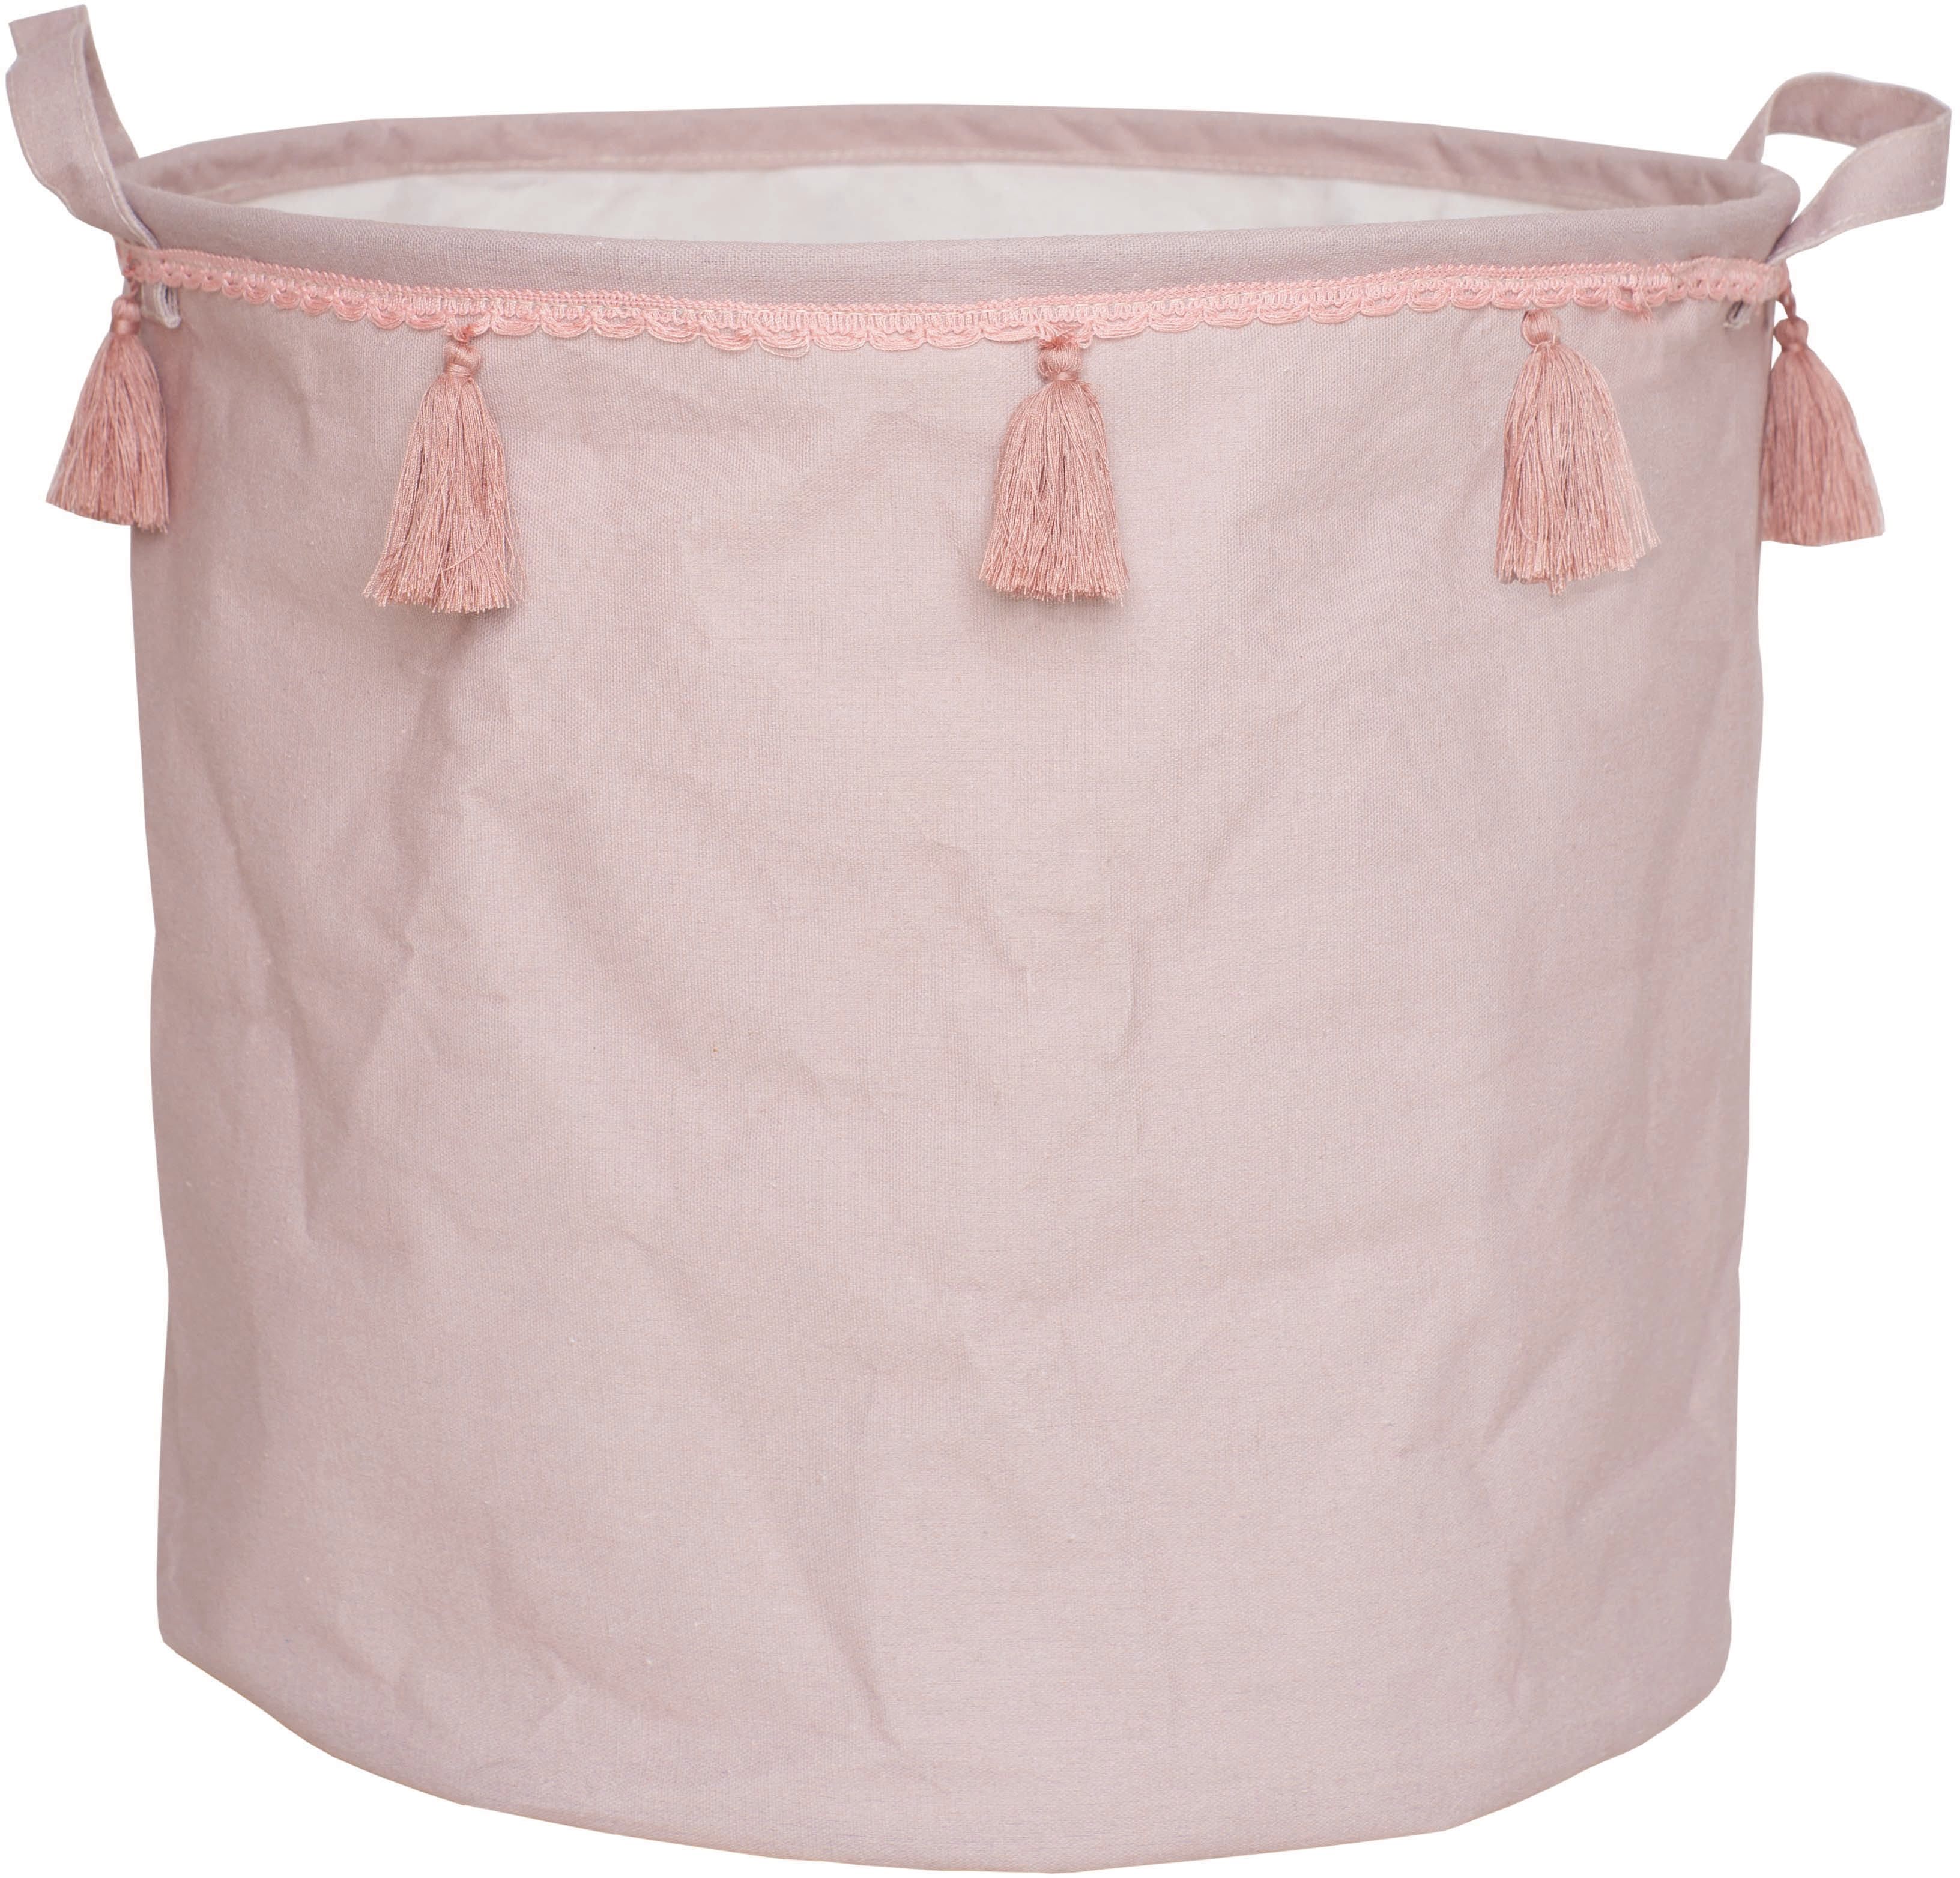 JABADABADO Storage basket K034 pink pink